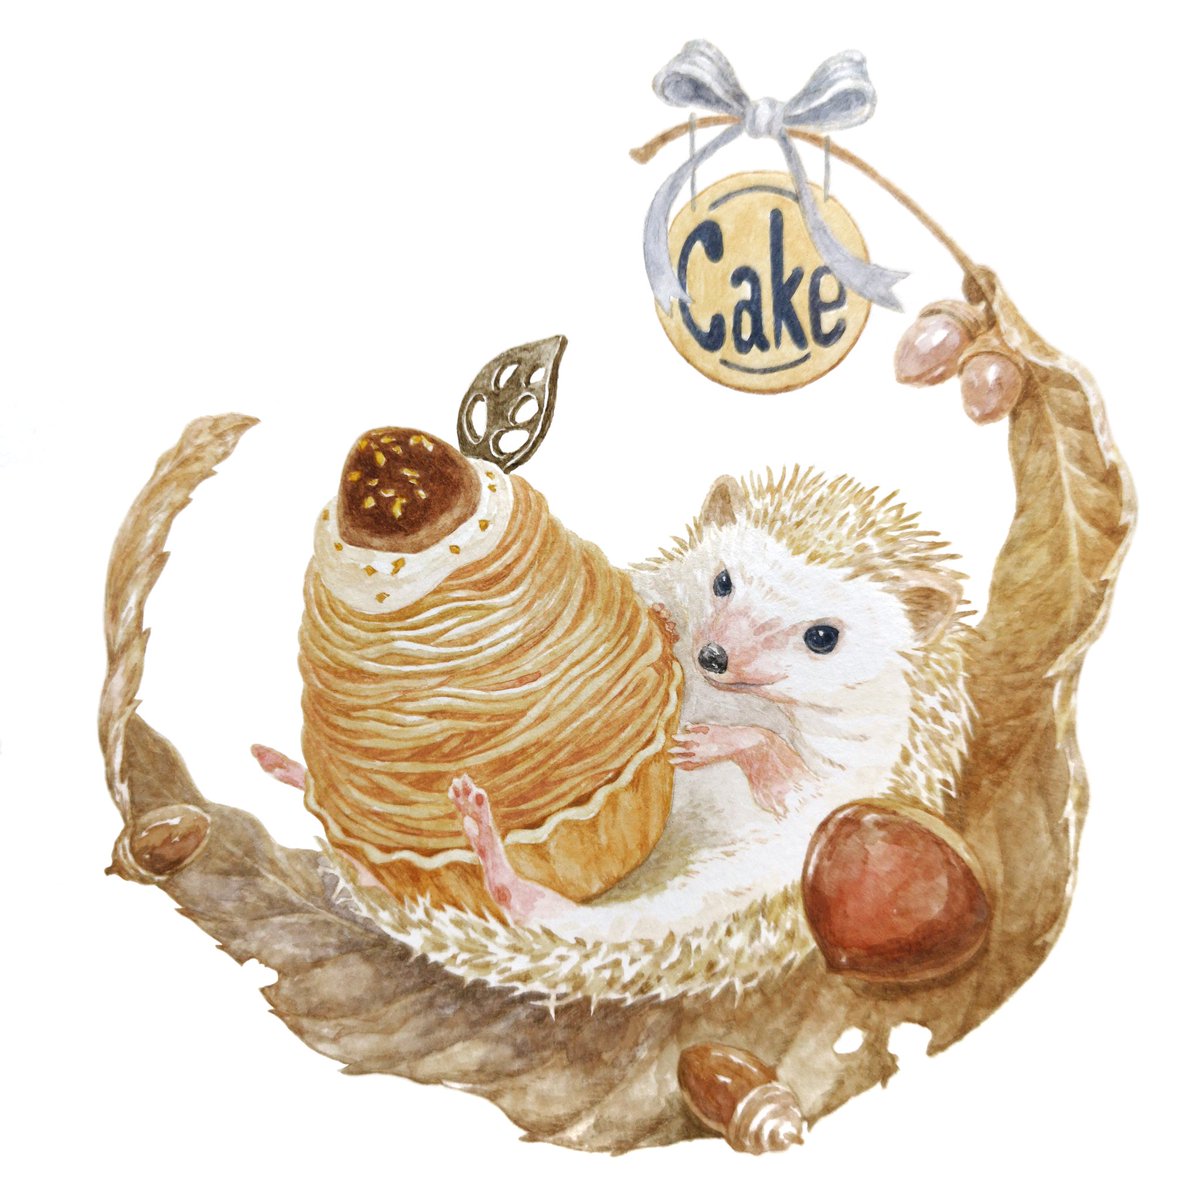 Hirotoshi Kanou 森の中のケーキ屋さん モンブランケーキとハリネズミ 今日から９月 実りの秋がやってきますね ハリネズミ モンブラン 秋のスイーツ 動物イラスト 食べ物イラスト Animalillustration Foodillustration T Co